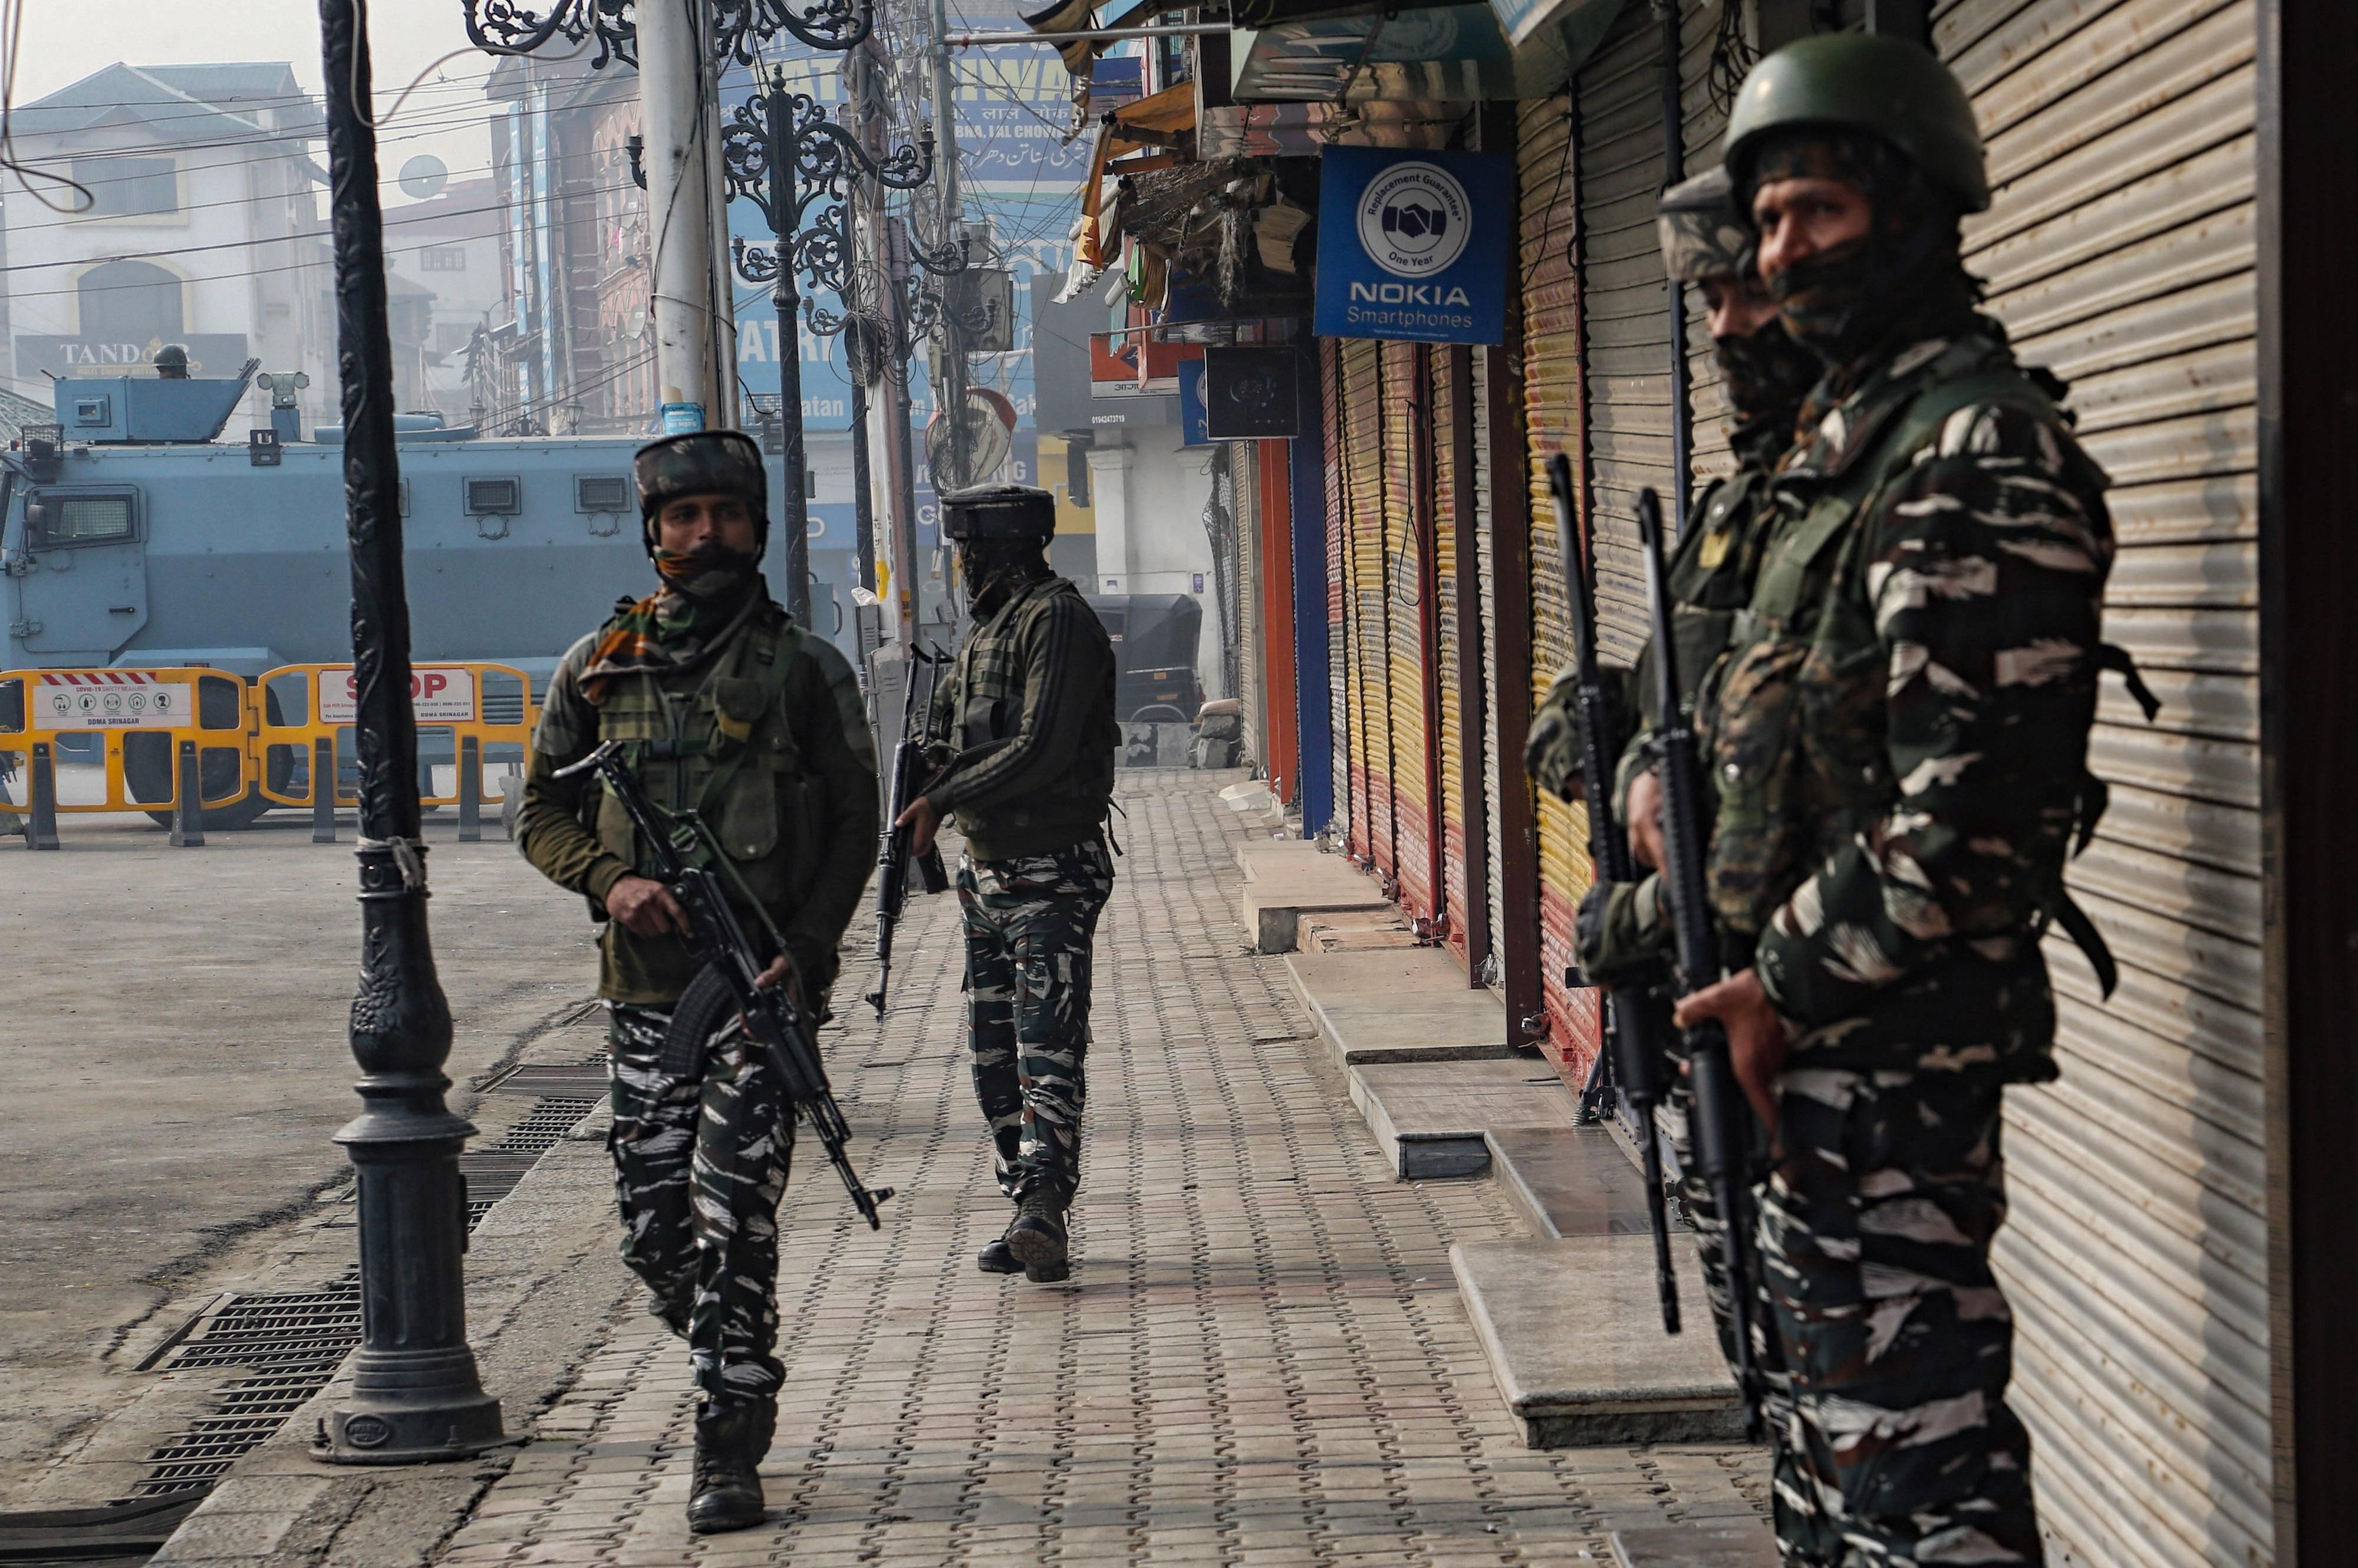 What We're Watching: Kashmir gerrymandering